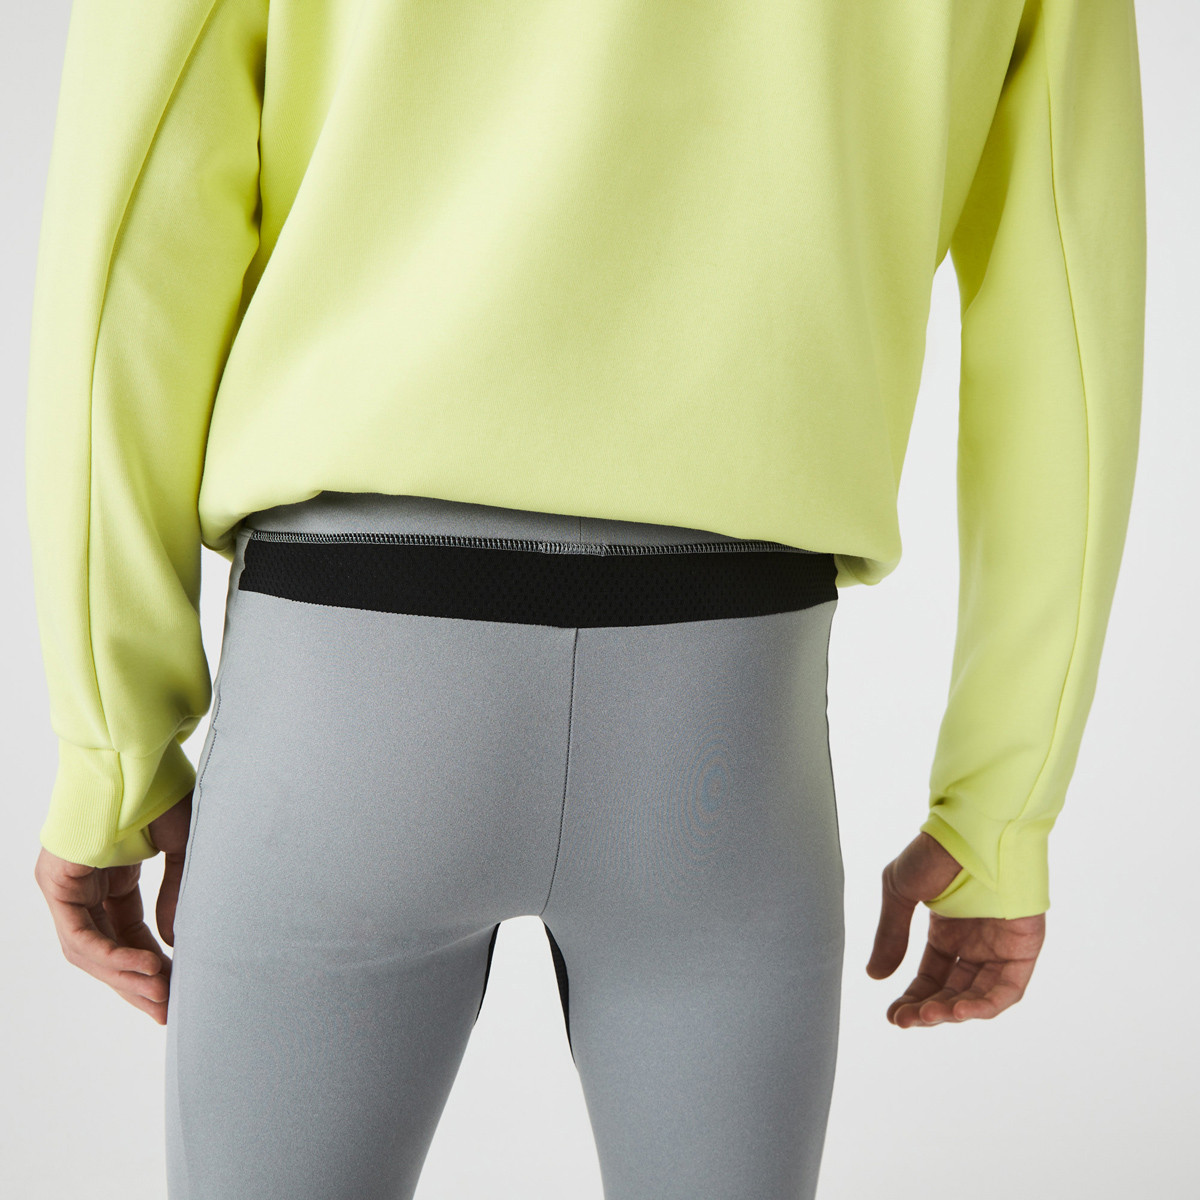 Nike Nike Run Tech Pack Knit Women's Running Tights - Neon yellow